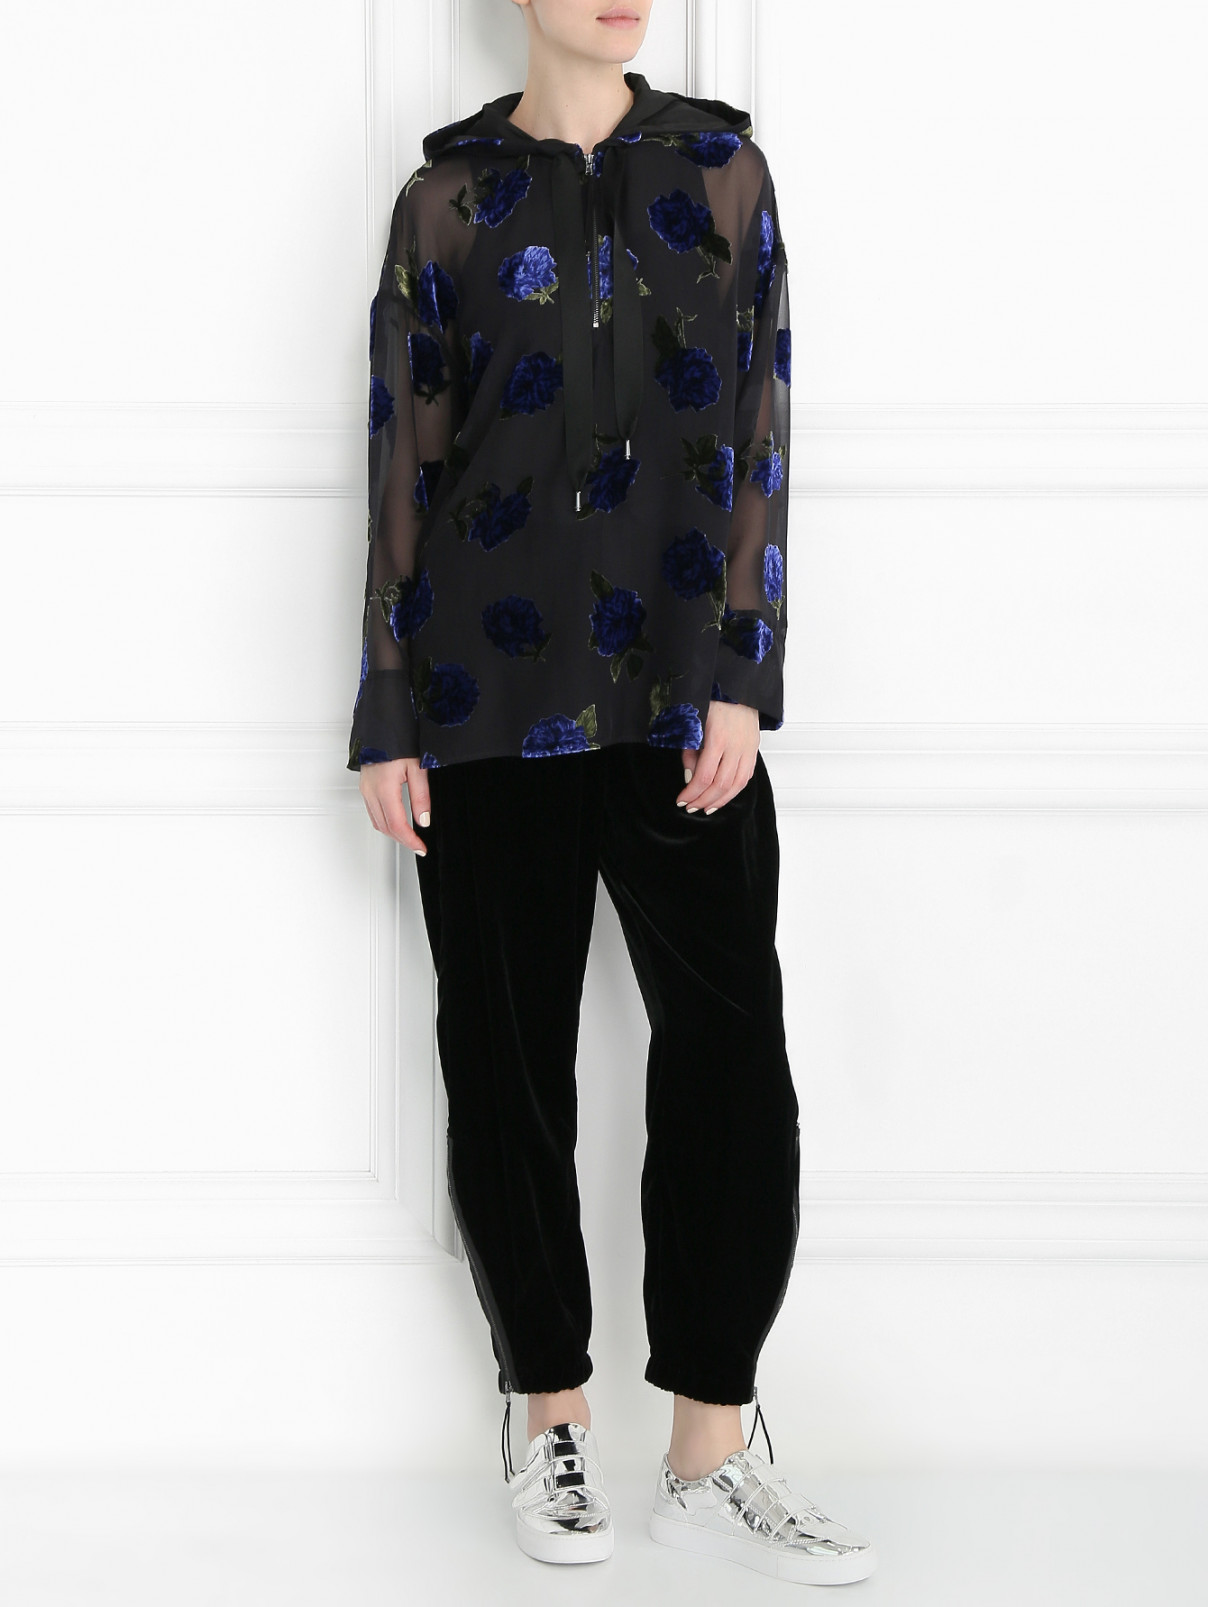 Бархатная блуза с капюшоном Sportmax Code  –  Модель Общий вид  – Цвет:  Узор